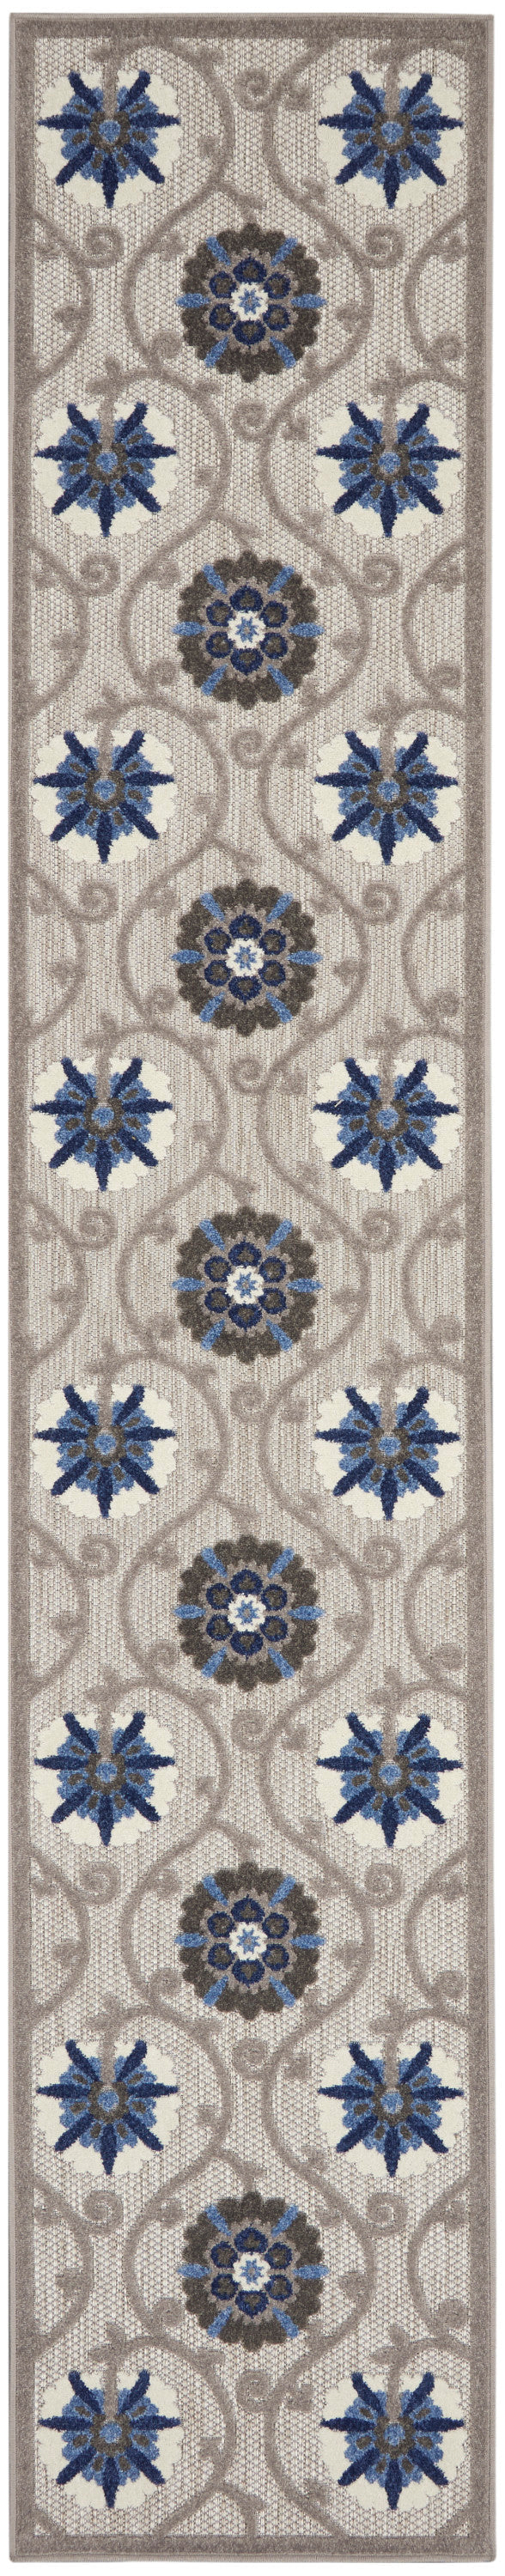 aloha grey blue rug by nourison 99446739445 redo 3